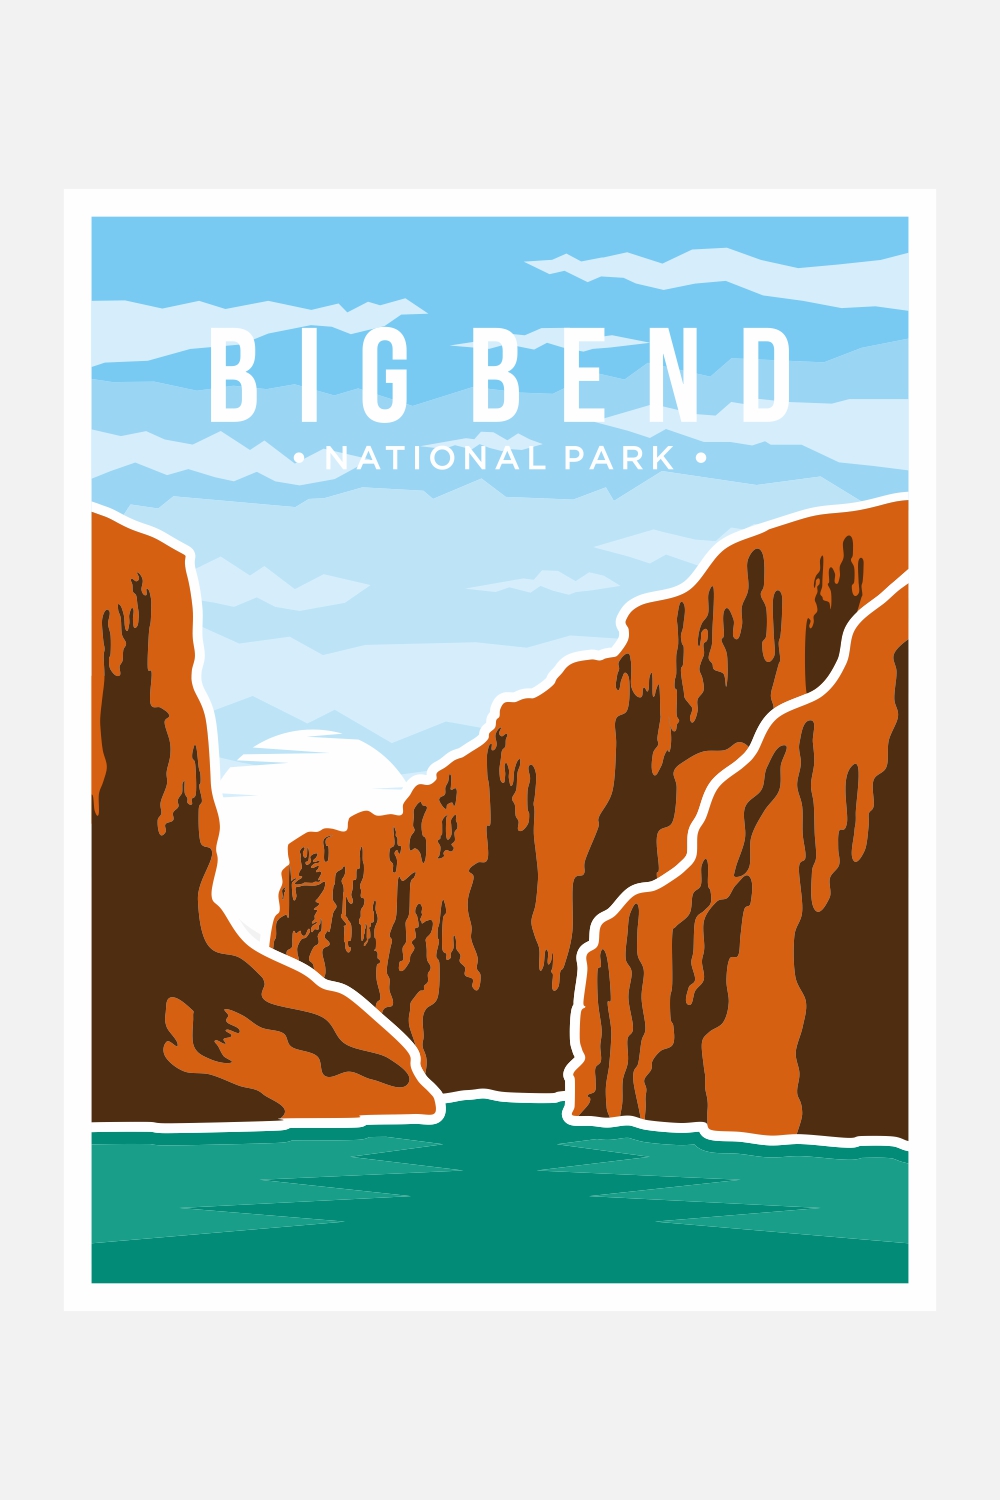 Big Bend National Park poster vector illustration design – Only $8 pinterest preview image.